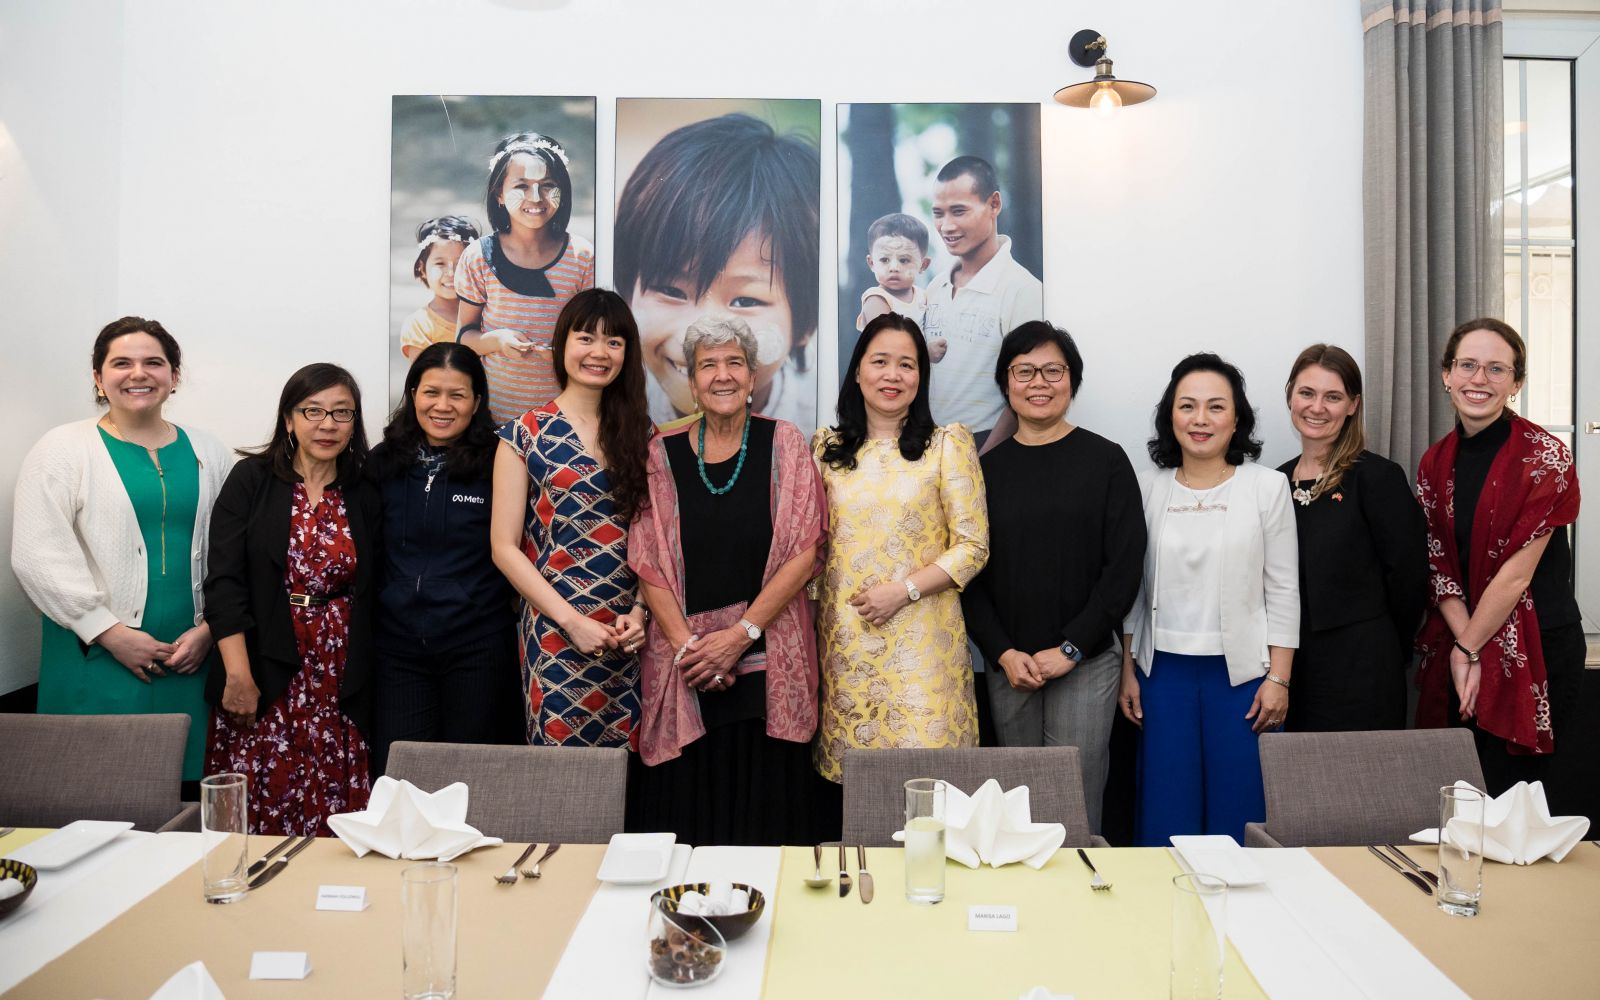 Trong khuôn khổ chuyến thăm, bà Lago đã có buổi làm việc với các lãnh đạo nữ hàng đầu trong lĩnh vực công nghệ của Việt Nam để thúc đẩy chương trình cố vấn SelectUSA Select Global Women in Tech cũng như thảo luận về những cách thức tốt nhất mà Hoa Kỳ và Việt Nam có thể thúc đẩy sự tham gia và lãnh đạo của phụ nữ trong công nghệ, thương mại và kinh doanh